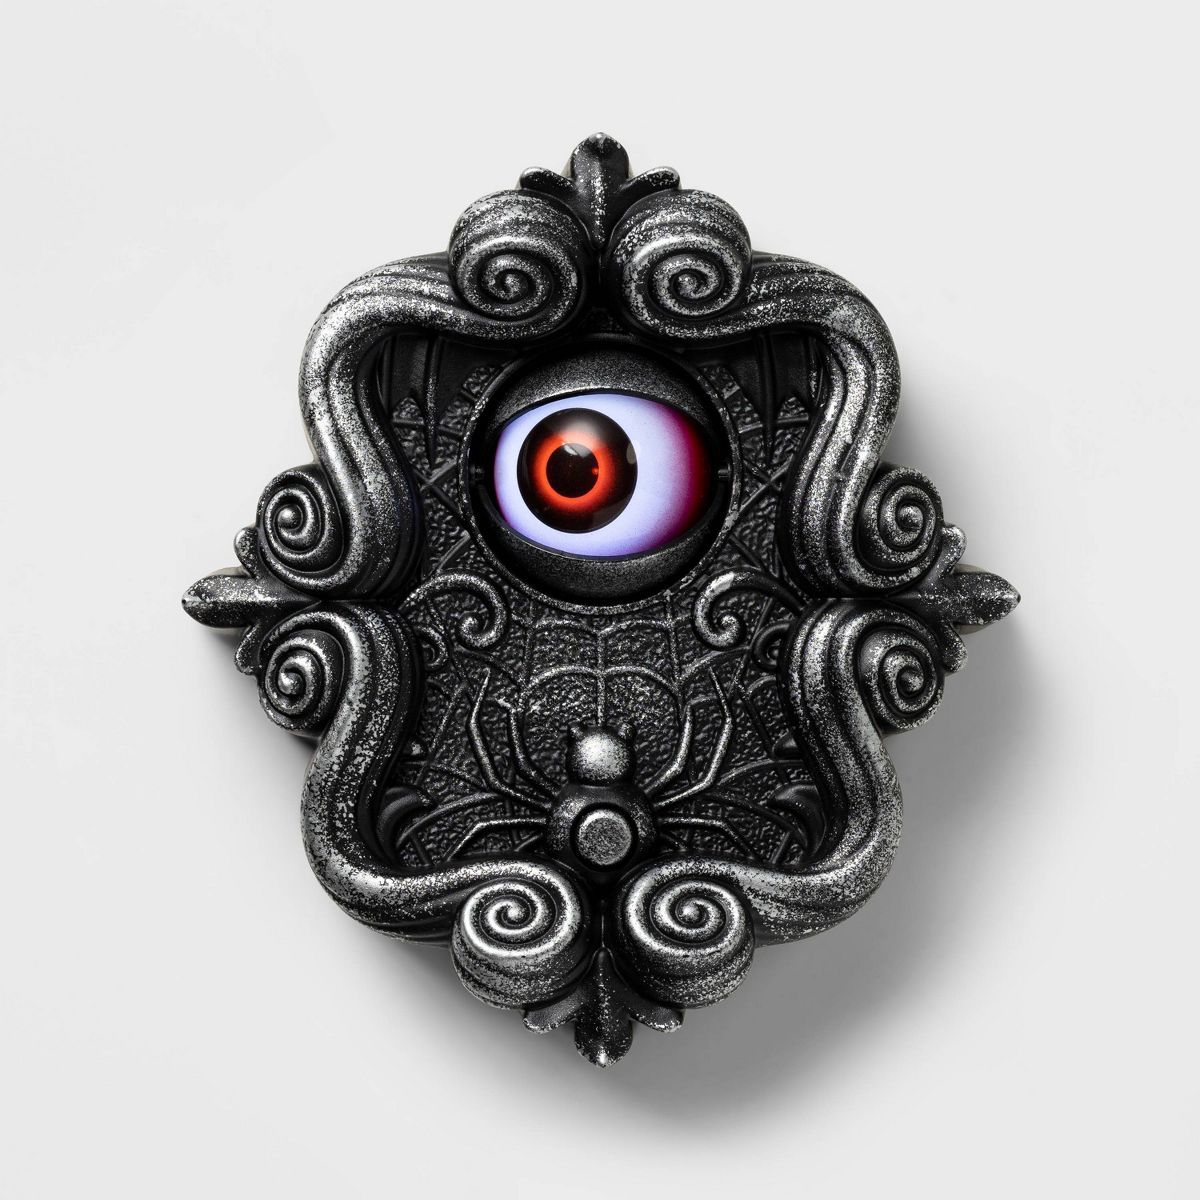 Animated Doorbell with Eye Halloween Decorative Prop - Hyde & EEK! Boutique™ | Target